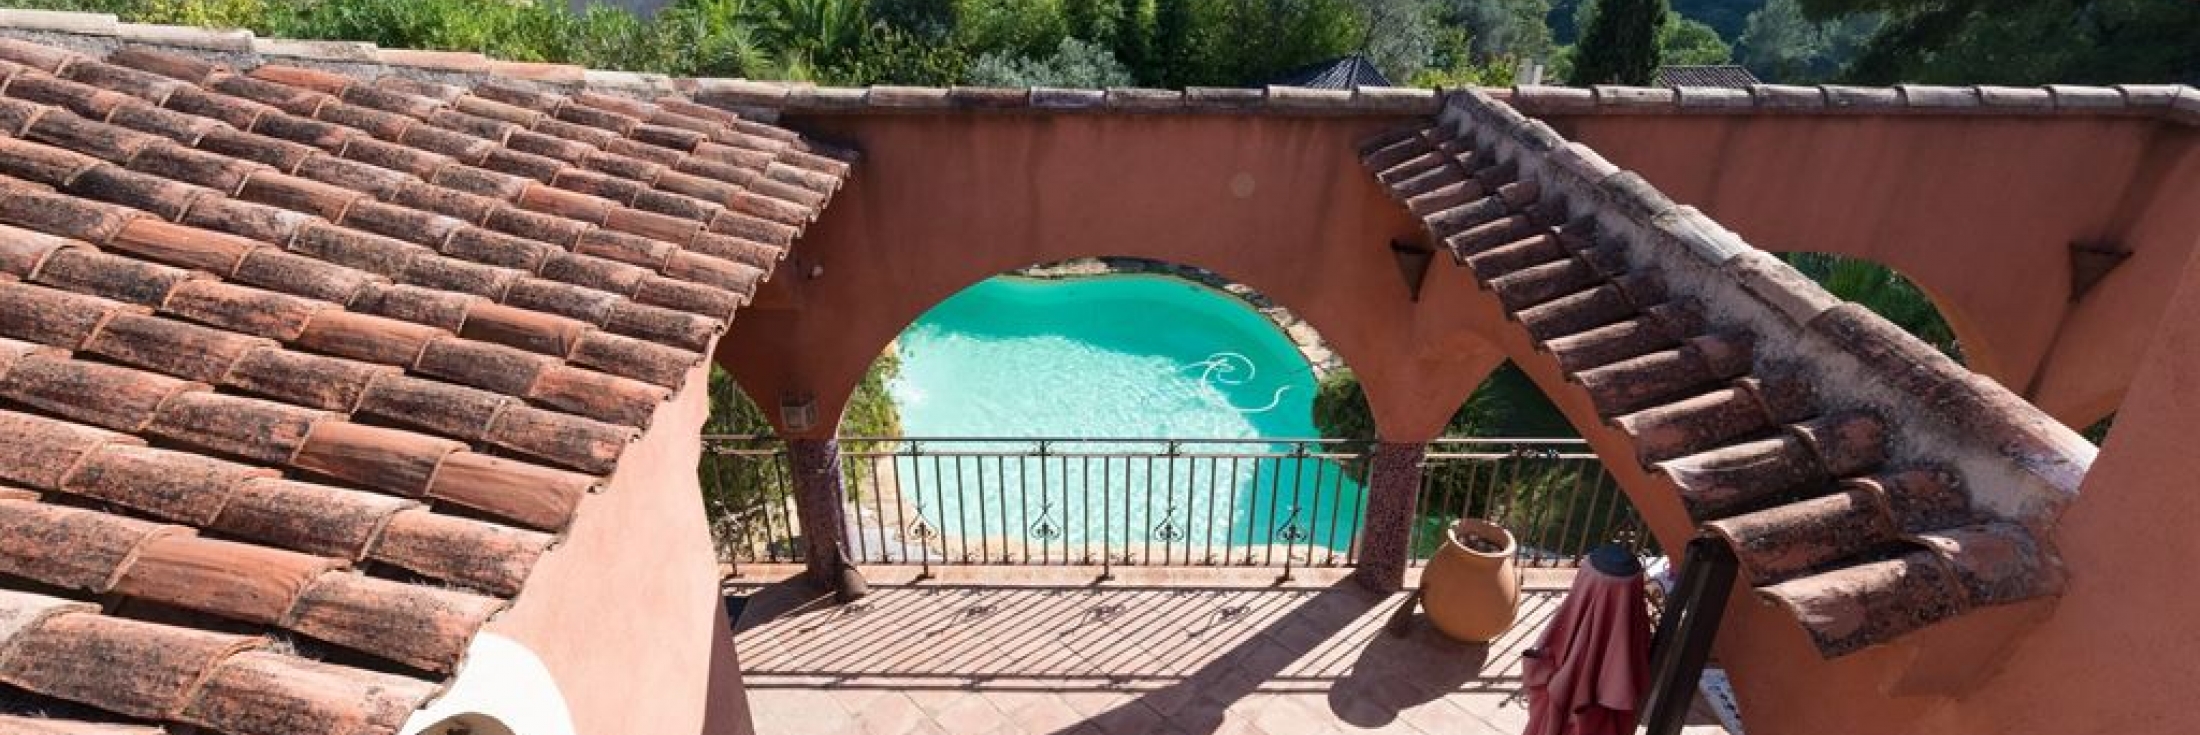 Vente villa T8 avec piscine, jacuzzi et hammam à Bandol